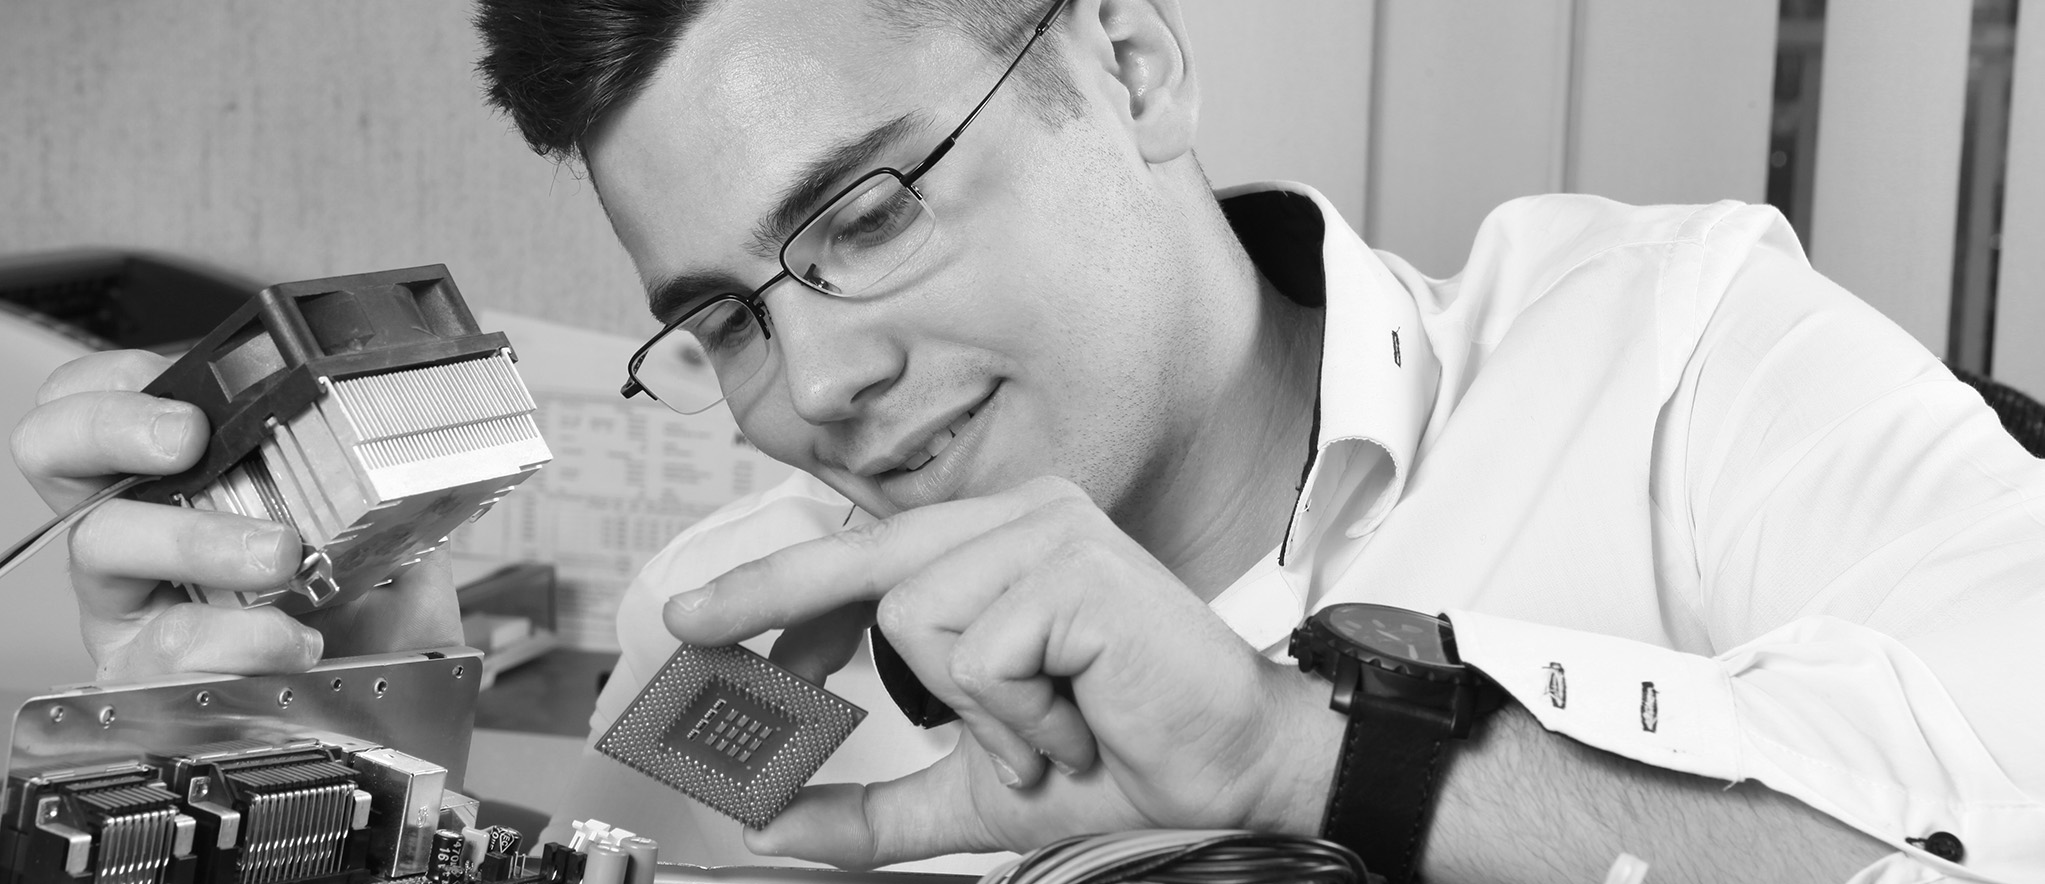 Junger Mann mit Brille unf Computer-Hardware-Teilen in der Hand